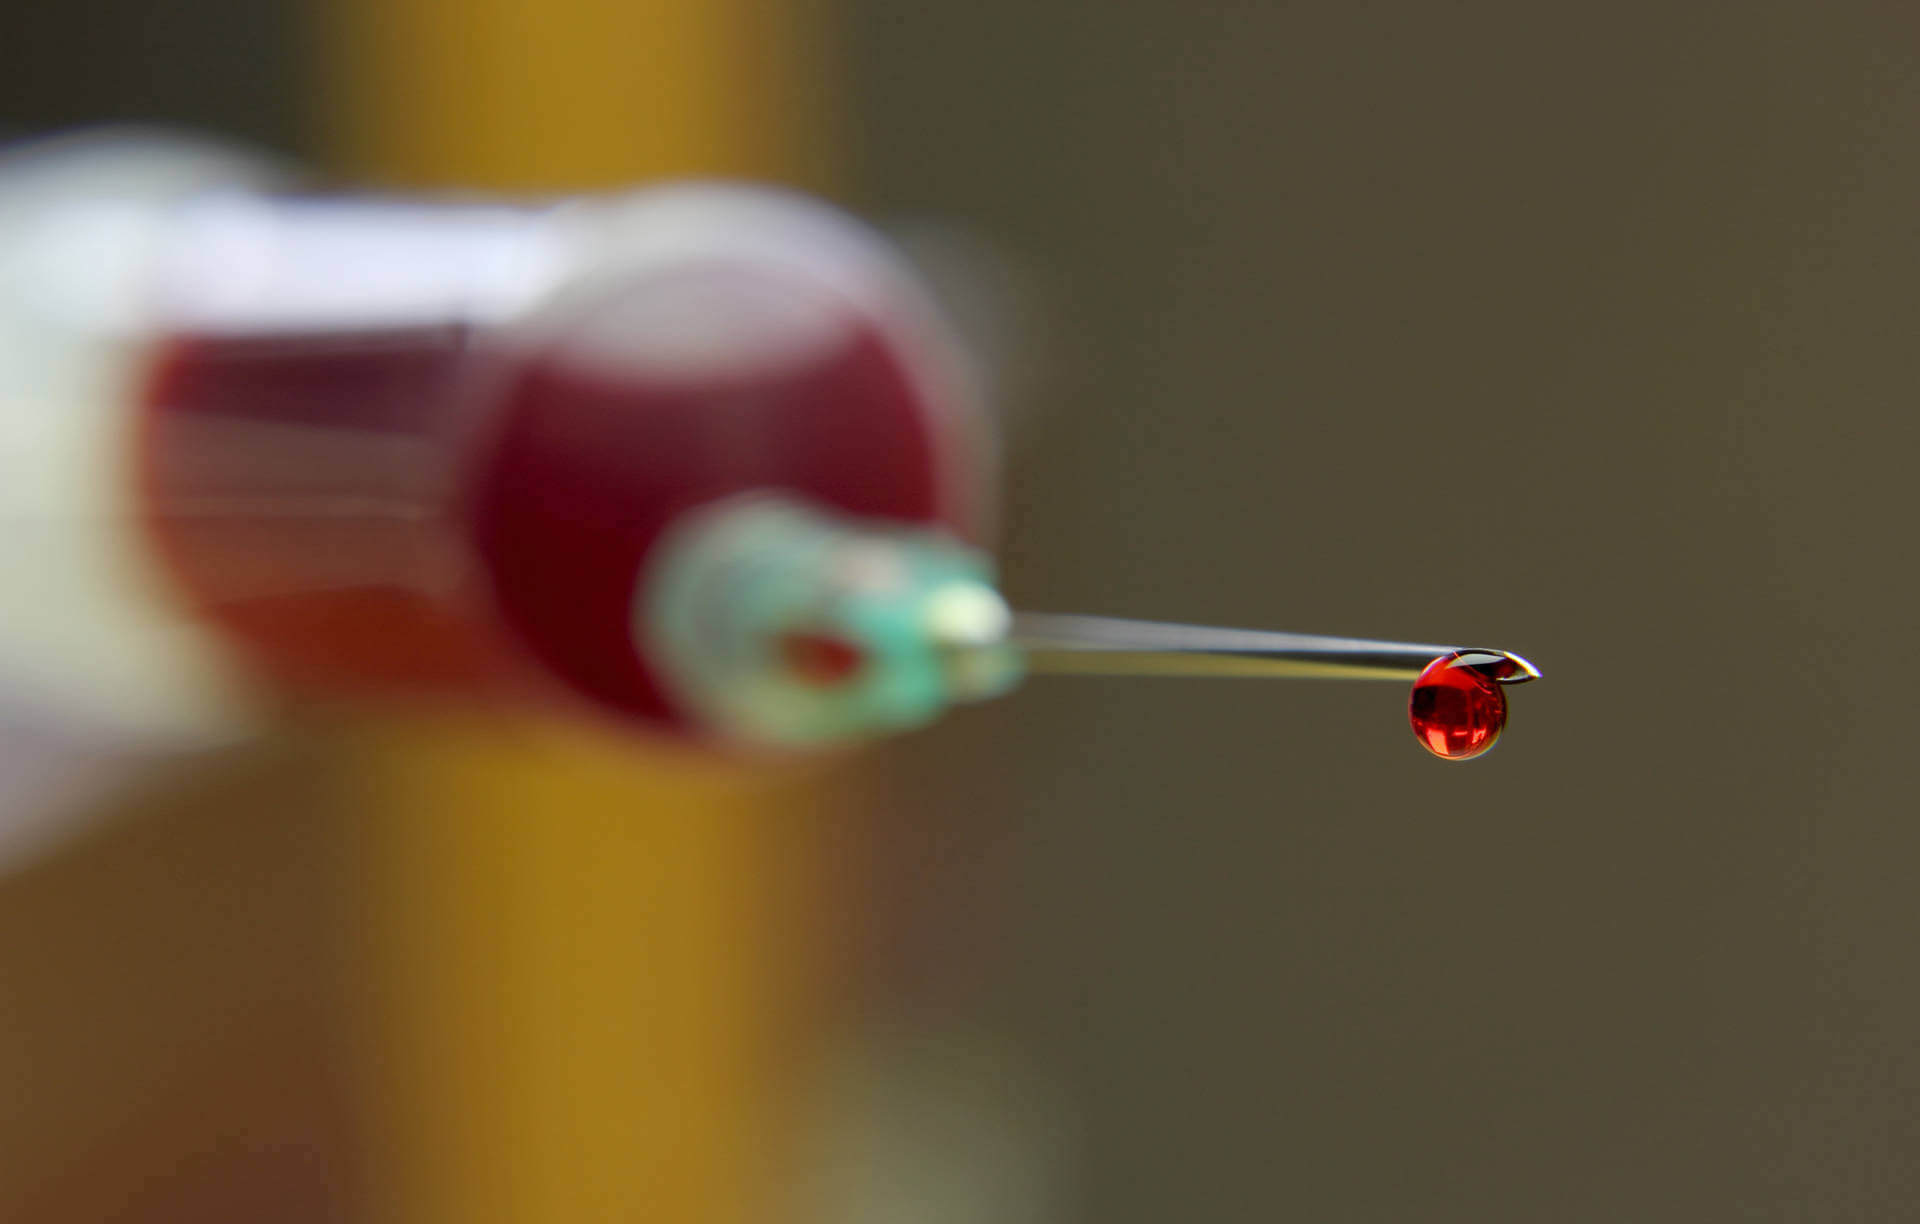 الجهاز الجديد من توشيبا قطرة من الدم يكشف عن 13 نوعا من السرطان